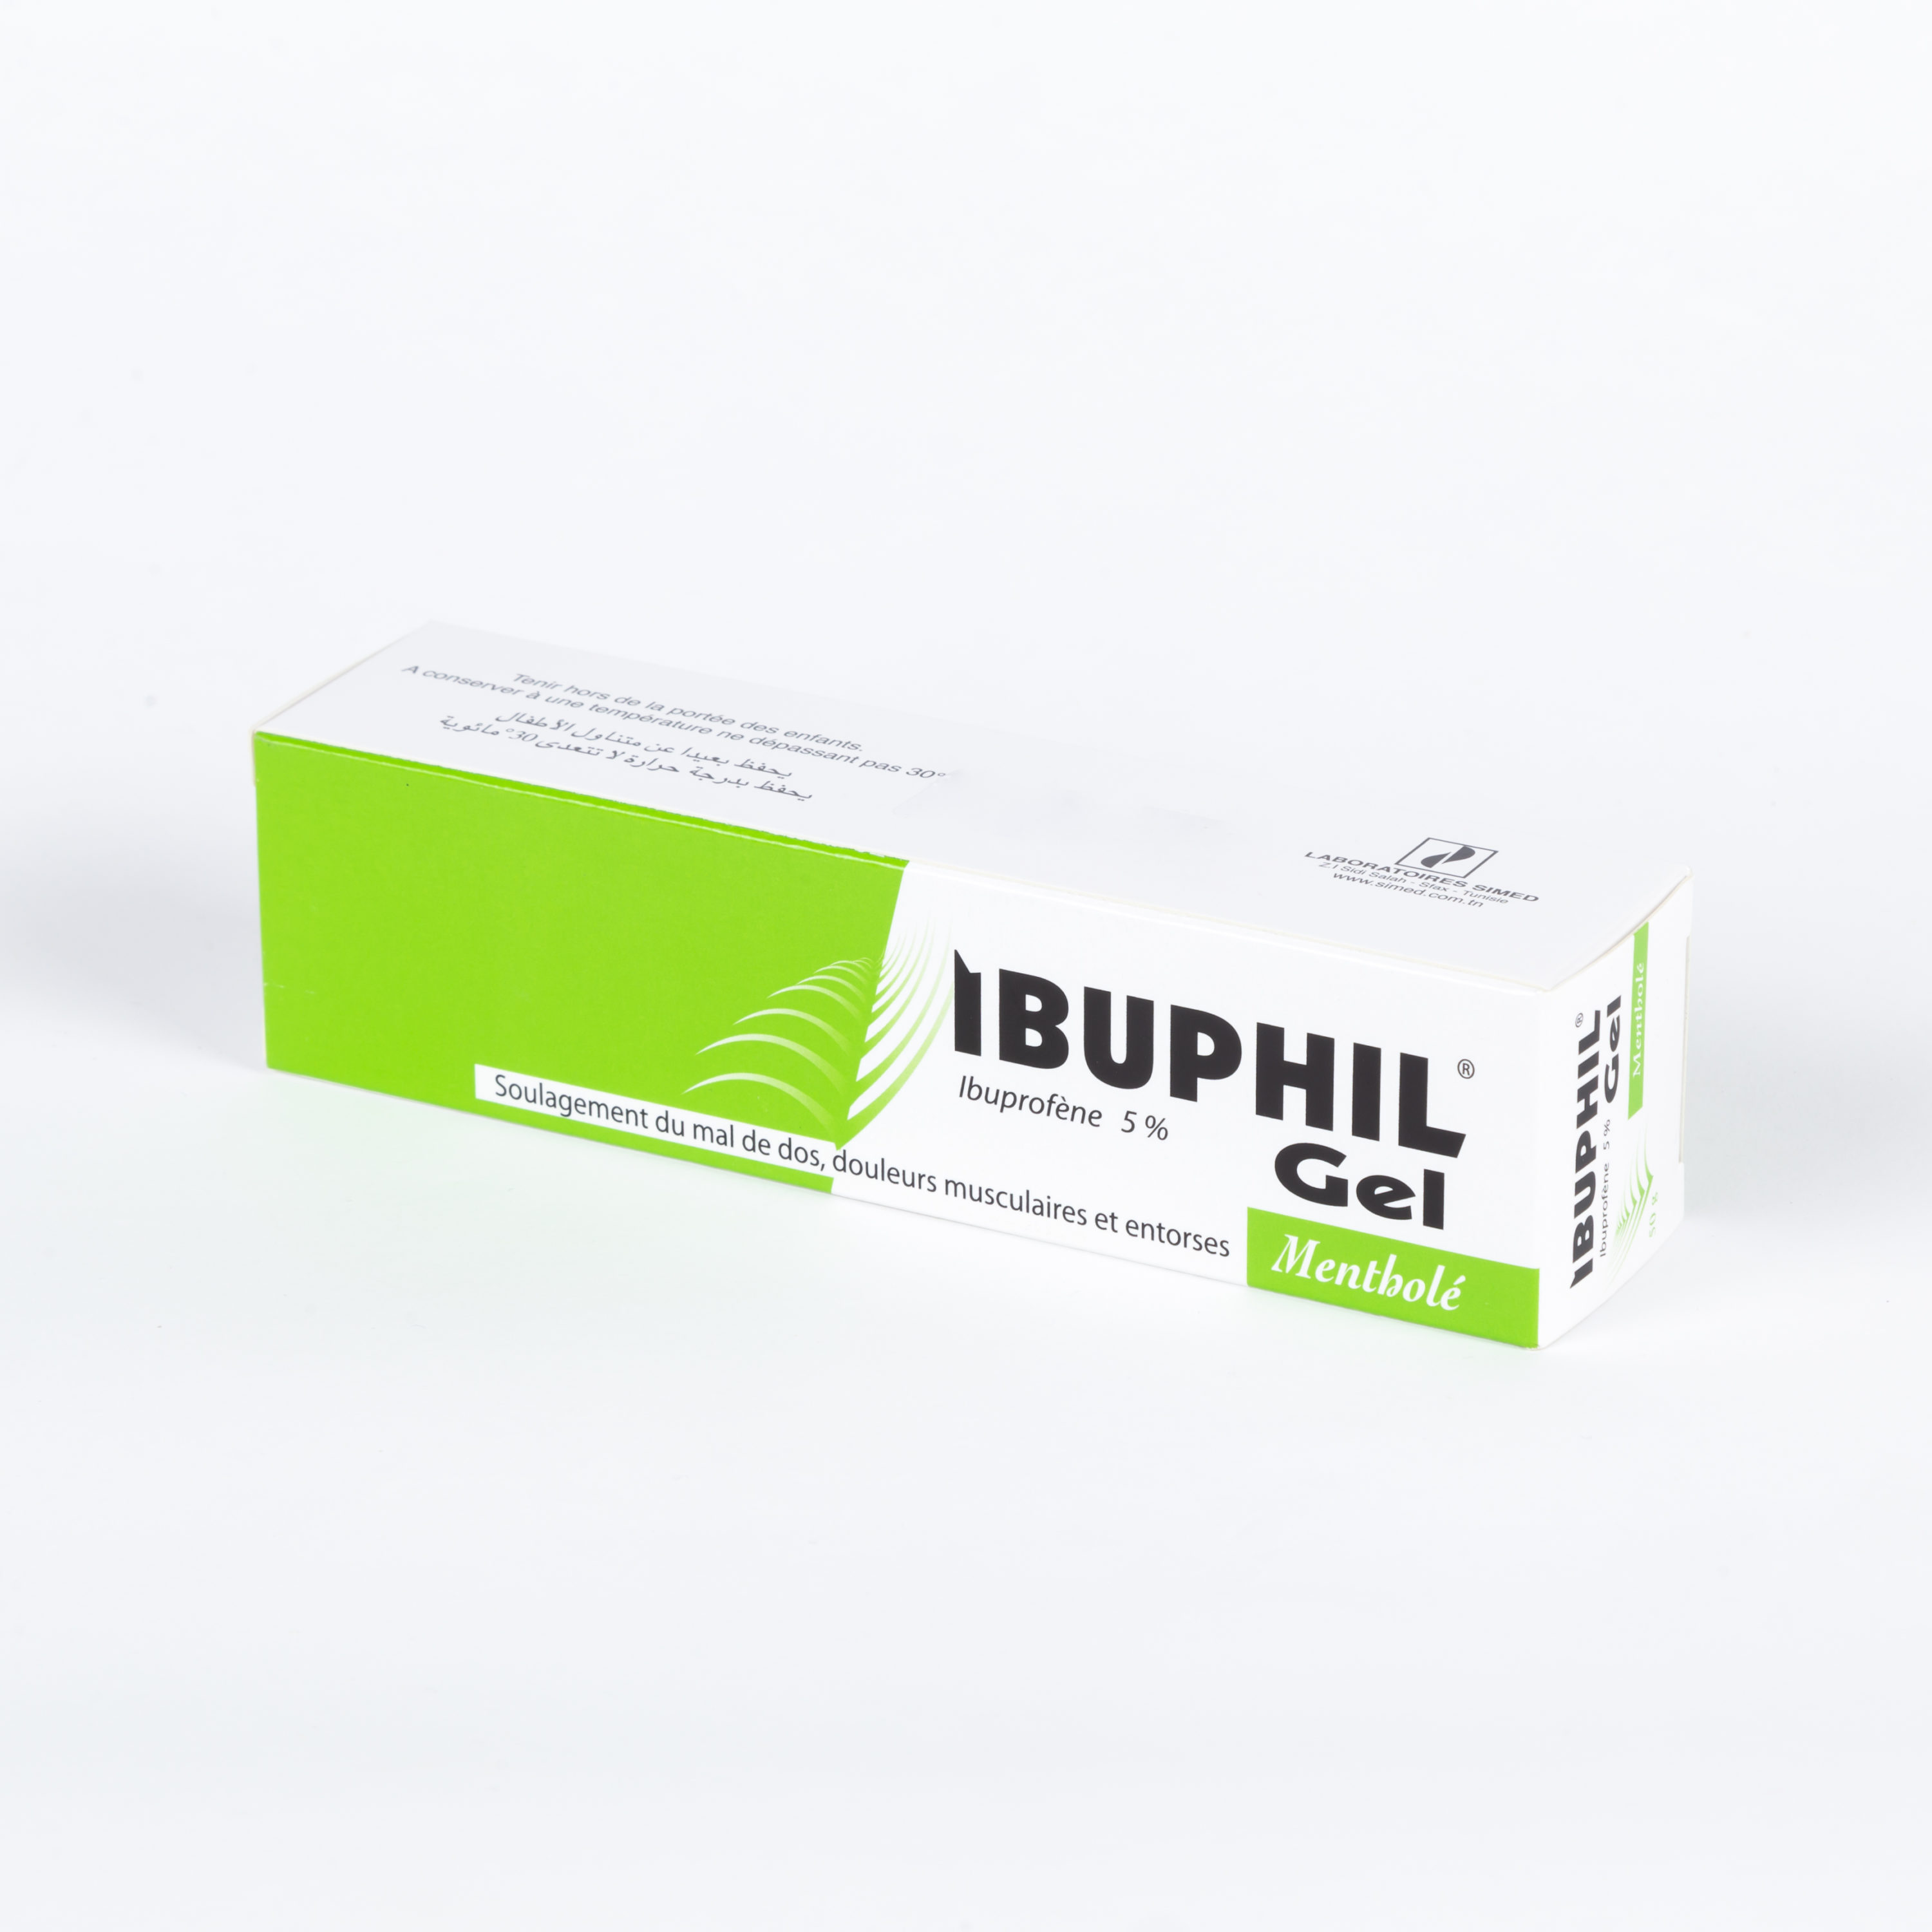 IBUPHIL GEL 5% MENTHOLE TUBE DE 50G